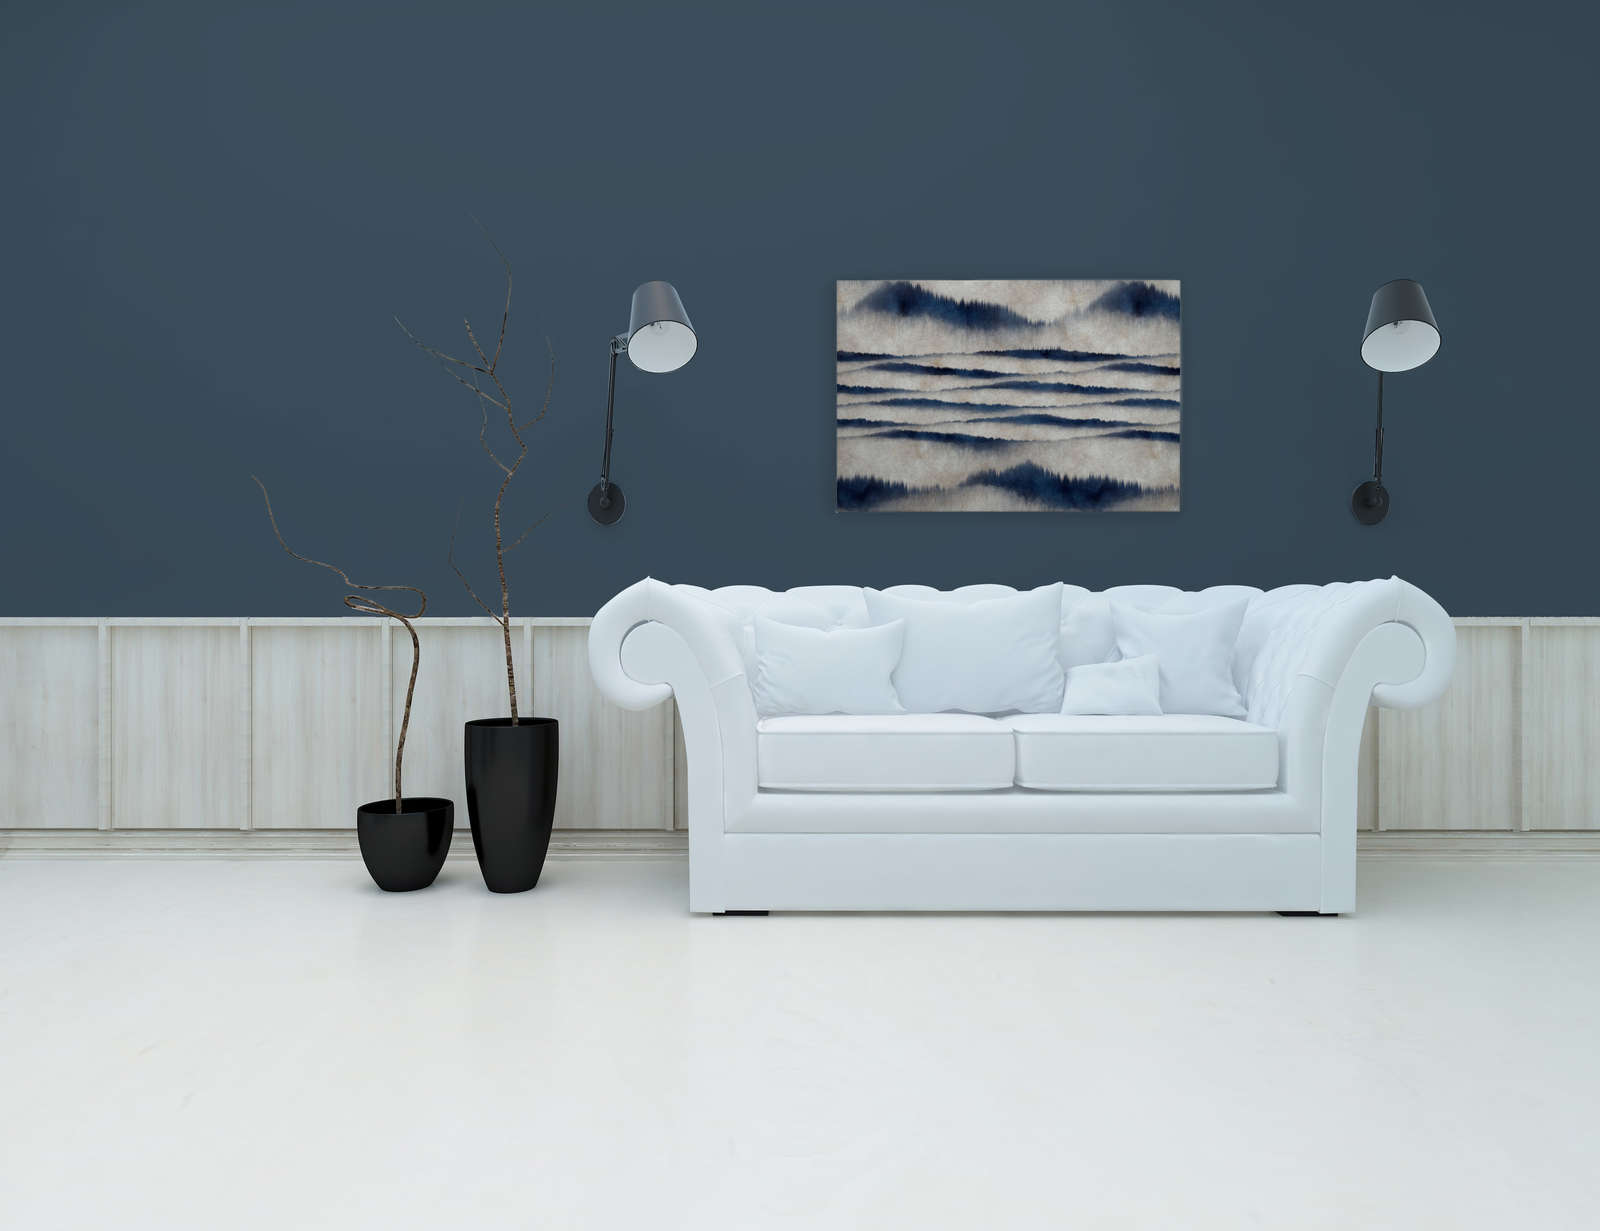             Canvas schilderij abstract patroon golven | blauw, wit - 0,90 m x 0,60 m
        